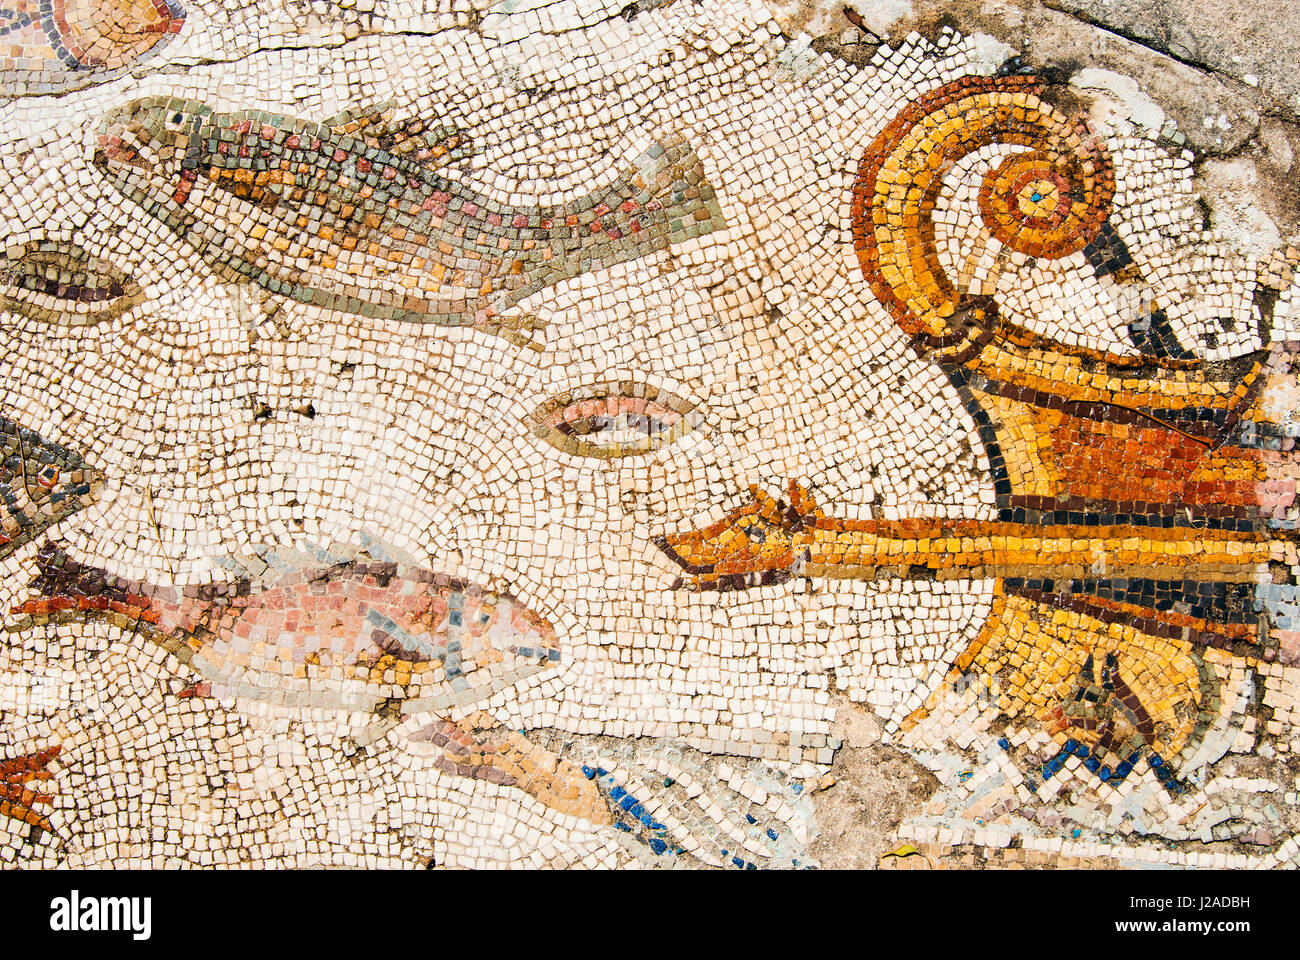 Mosaik, Utica punischen und römischen archäologischen Stätte, Tunesien, Nordafrika Stockfoto